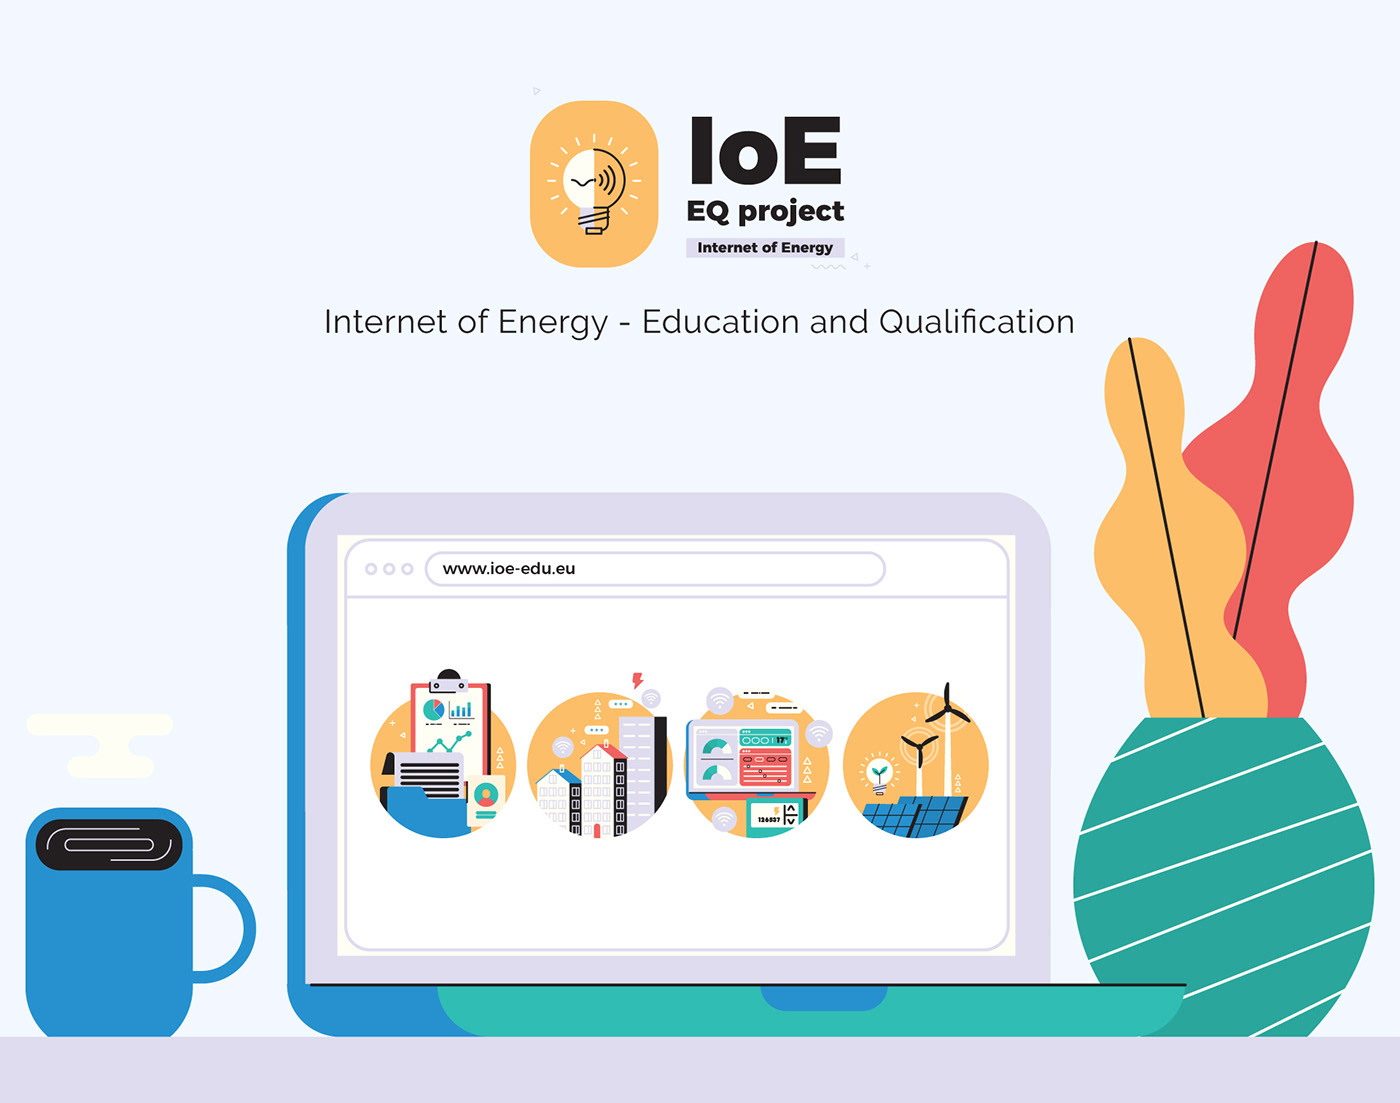 educação Education energia energy explainer Internet internet of energy ioe Qualificação qualification